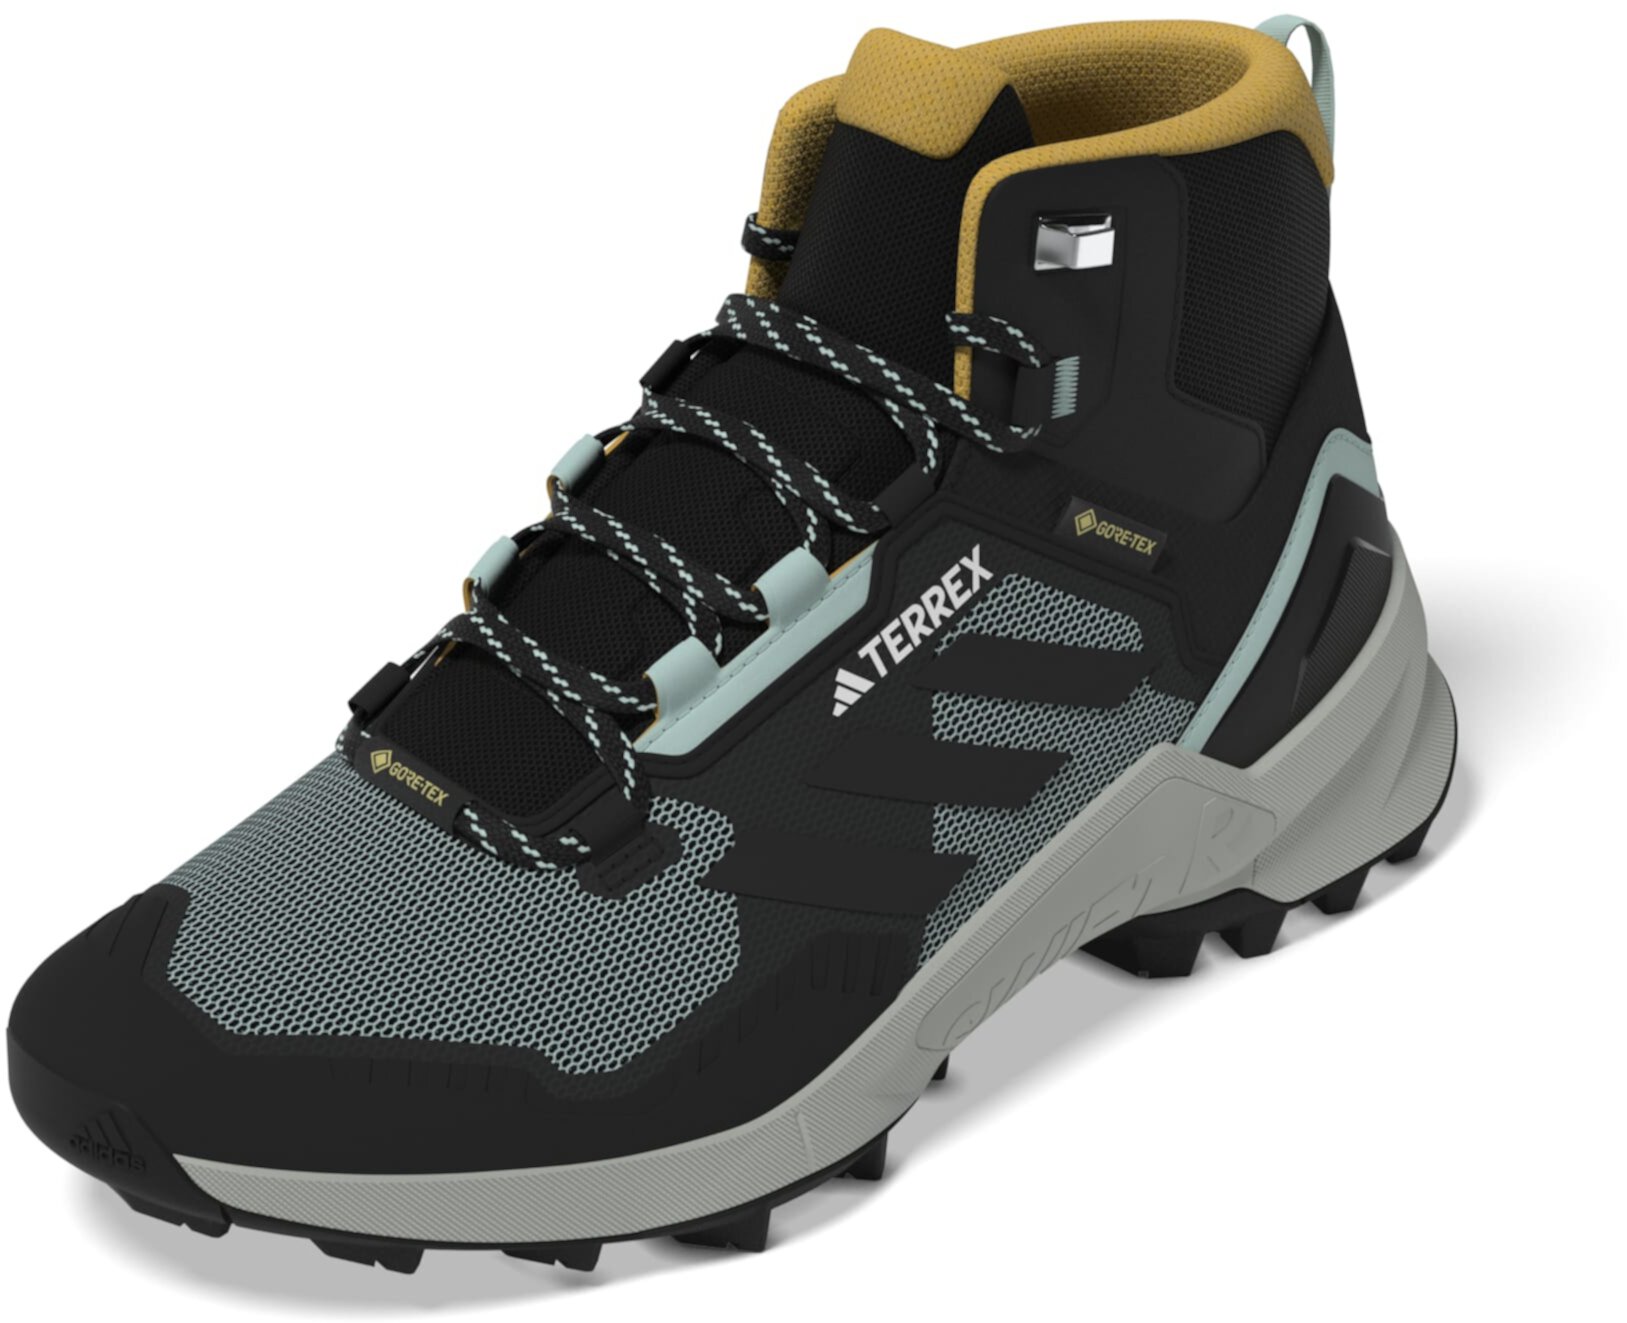 Ботинки для пеших прогулок Terrex Swift R3 Mid GTX® от Adidas (мужские) Adidas